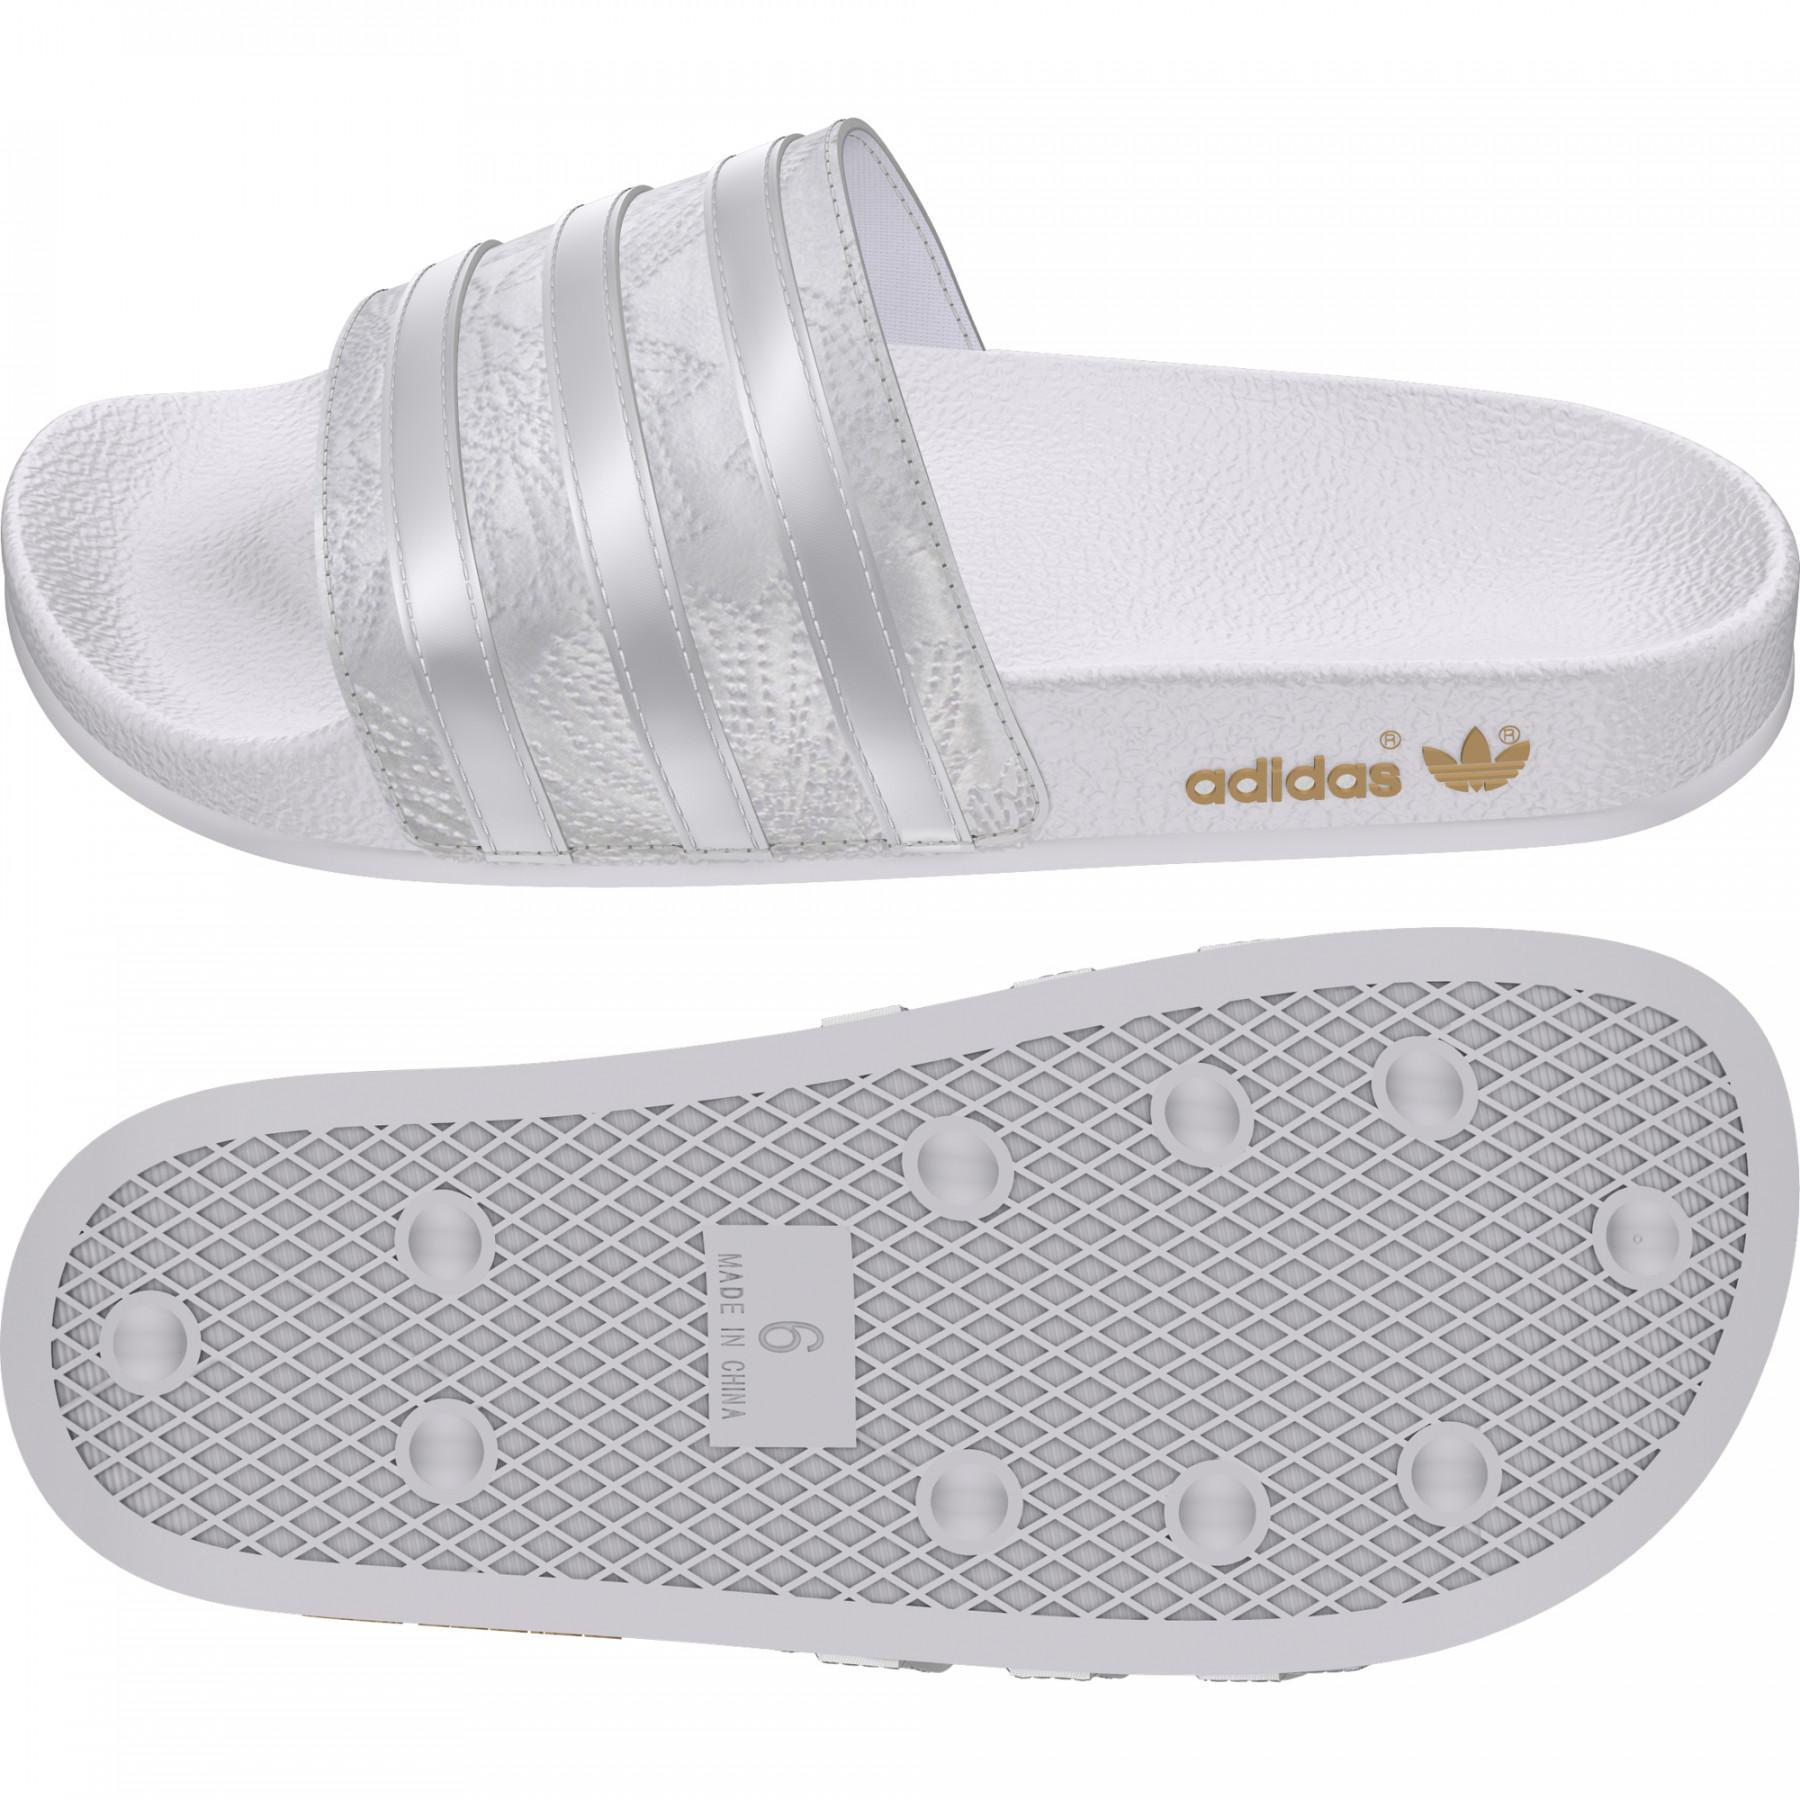 Damen-Flip-Flops adidas Originals Adilette